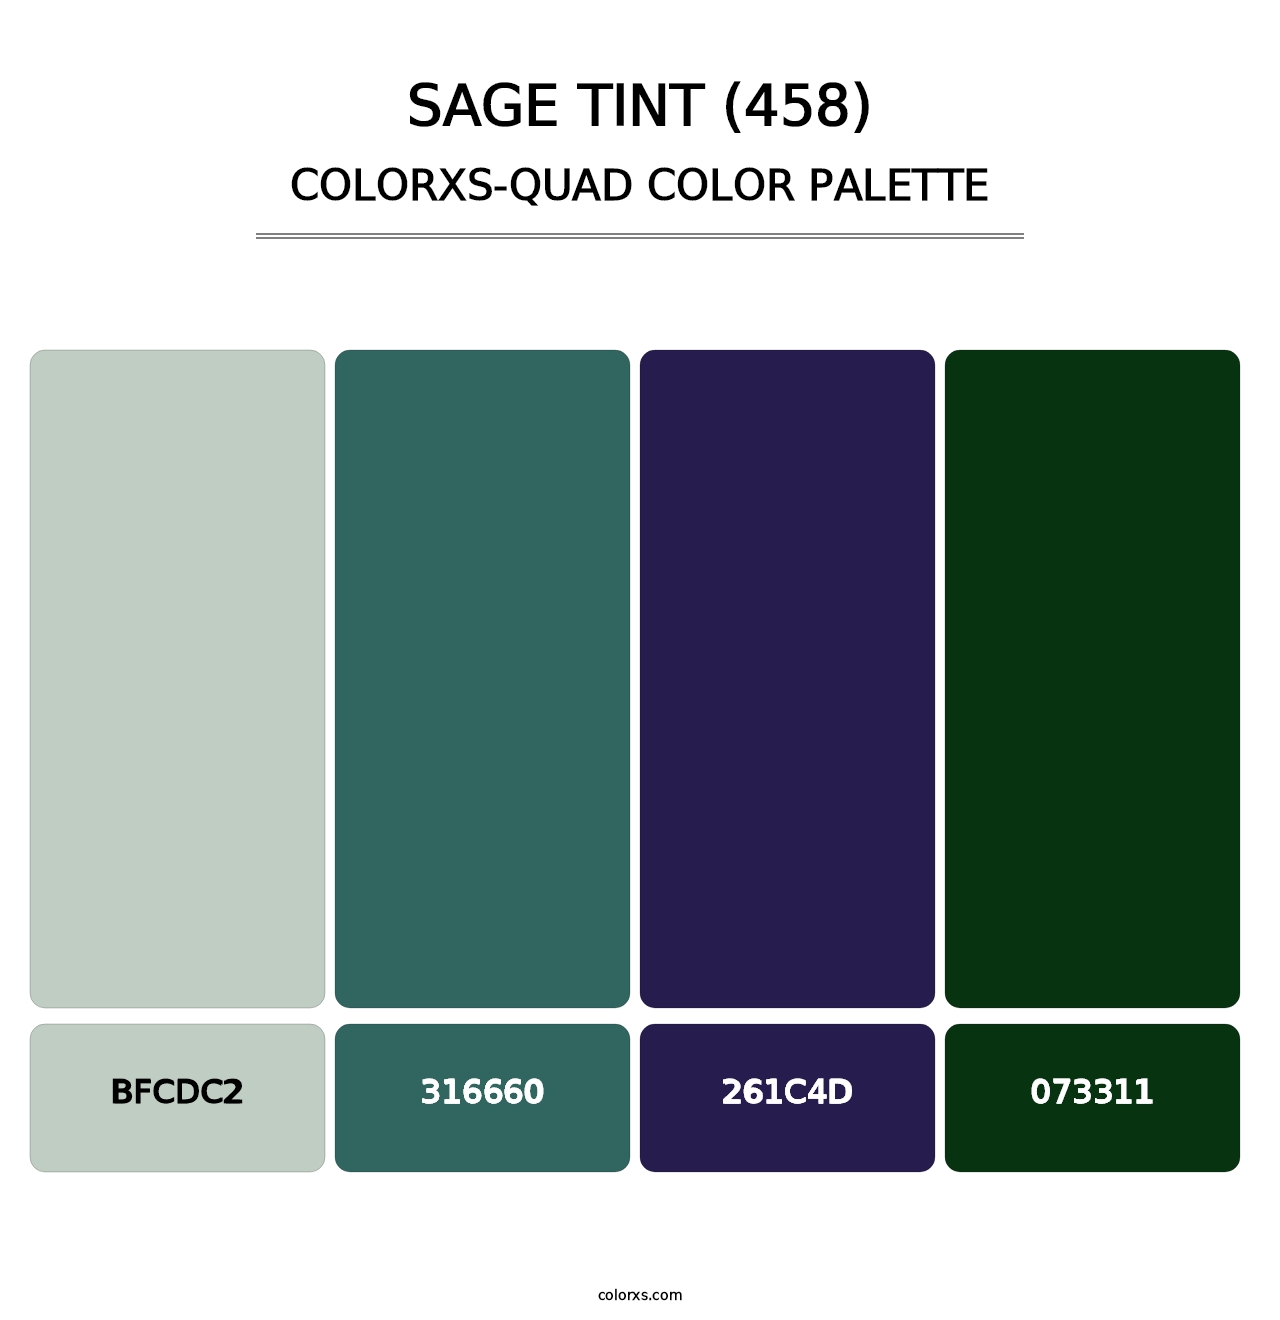 Sage Tint (458) - Colorxs Quad Palette